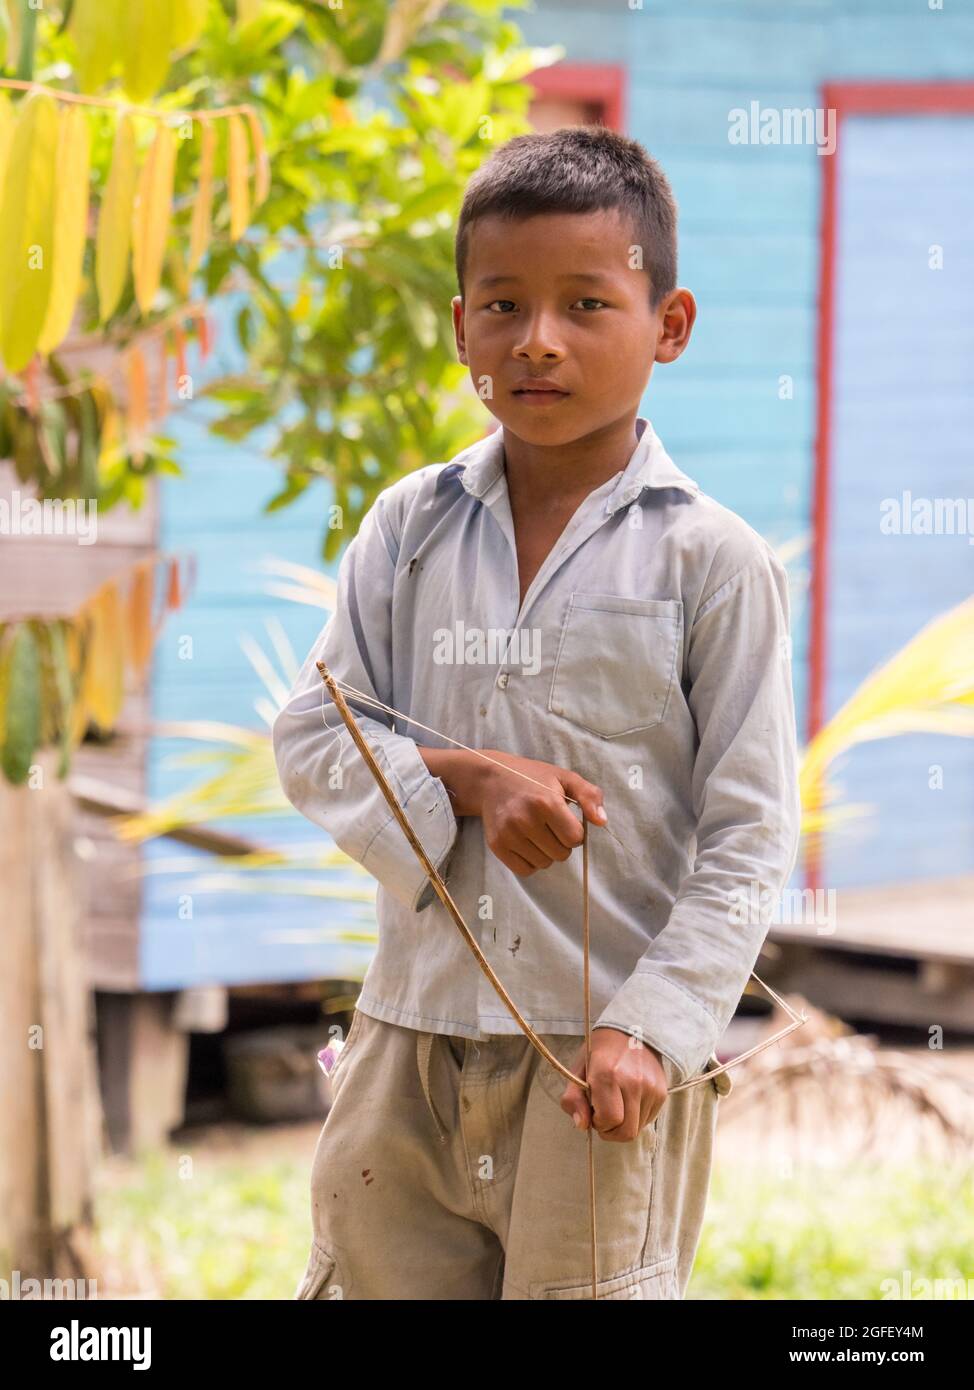 San Pedro, Brésil - septembre 2017: Portrait d'un garçon avec un arc avec une flèche - habitant local de la forêt tropicale amazonienne. Amazonie. Amérique latine Banque D'Images